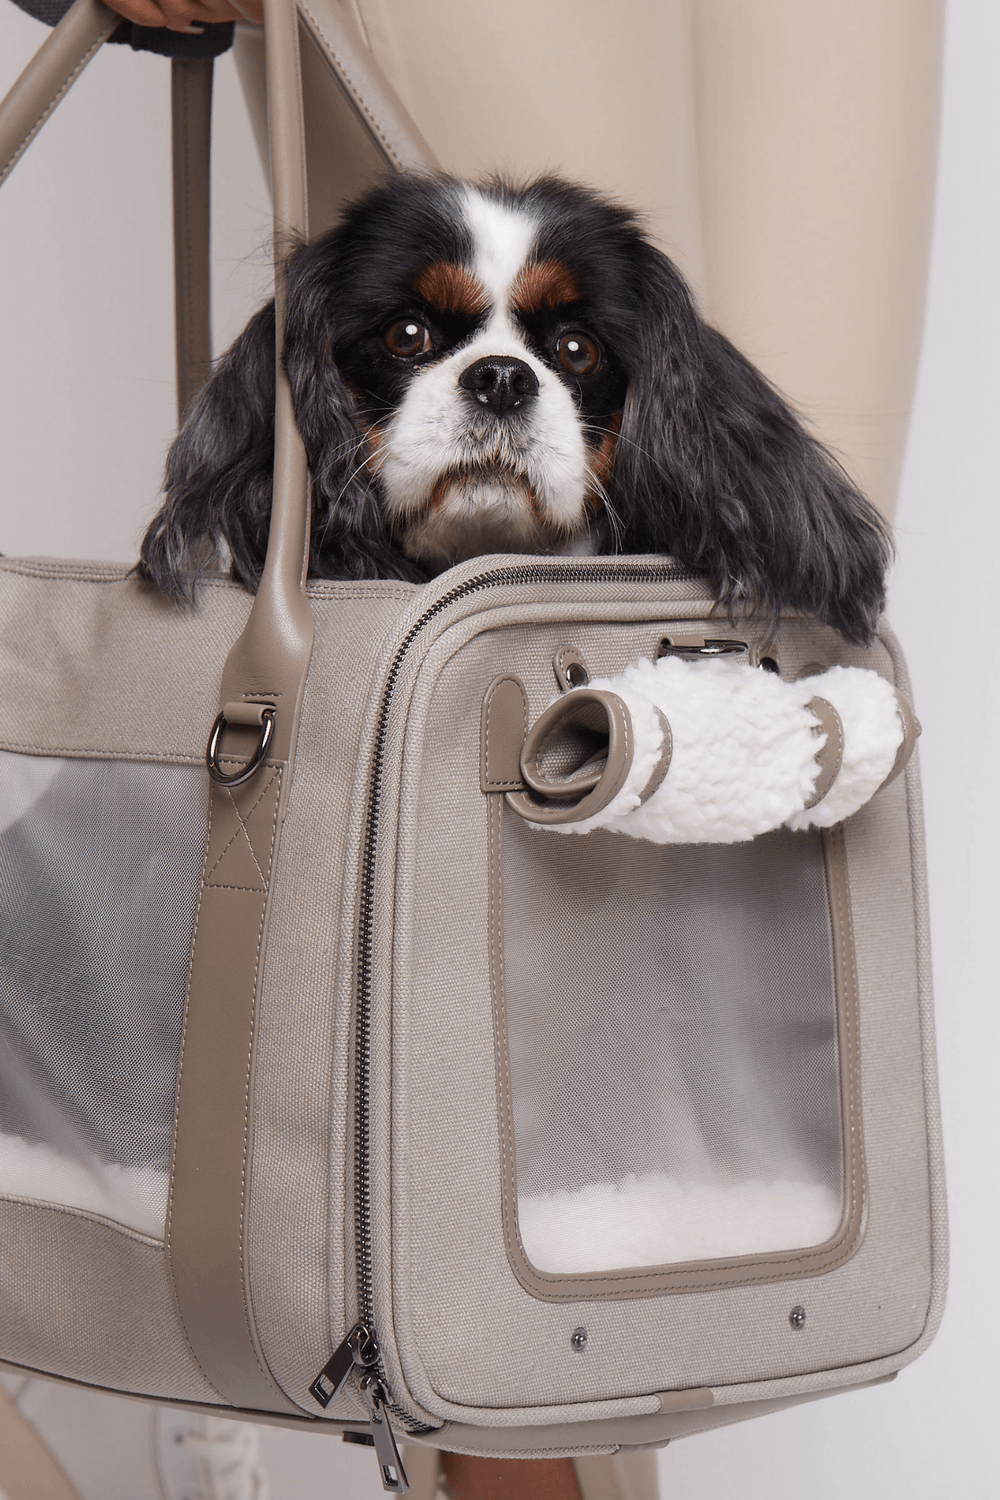 Global Citizen Pet Carrier Bag - maxbone